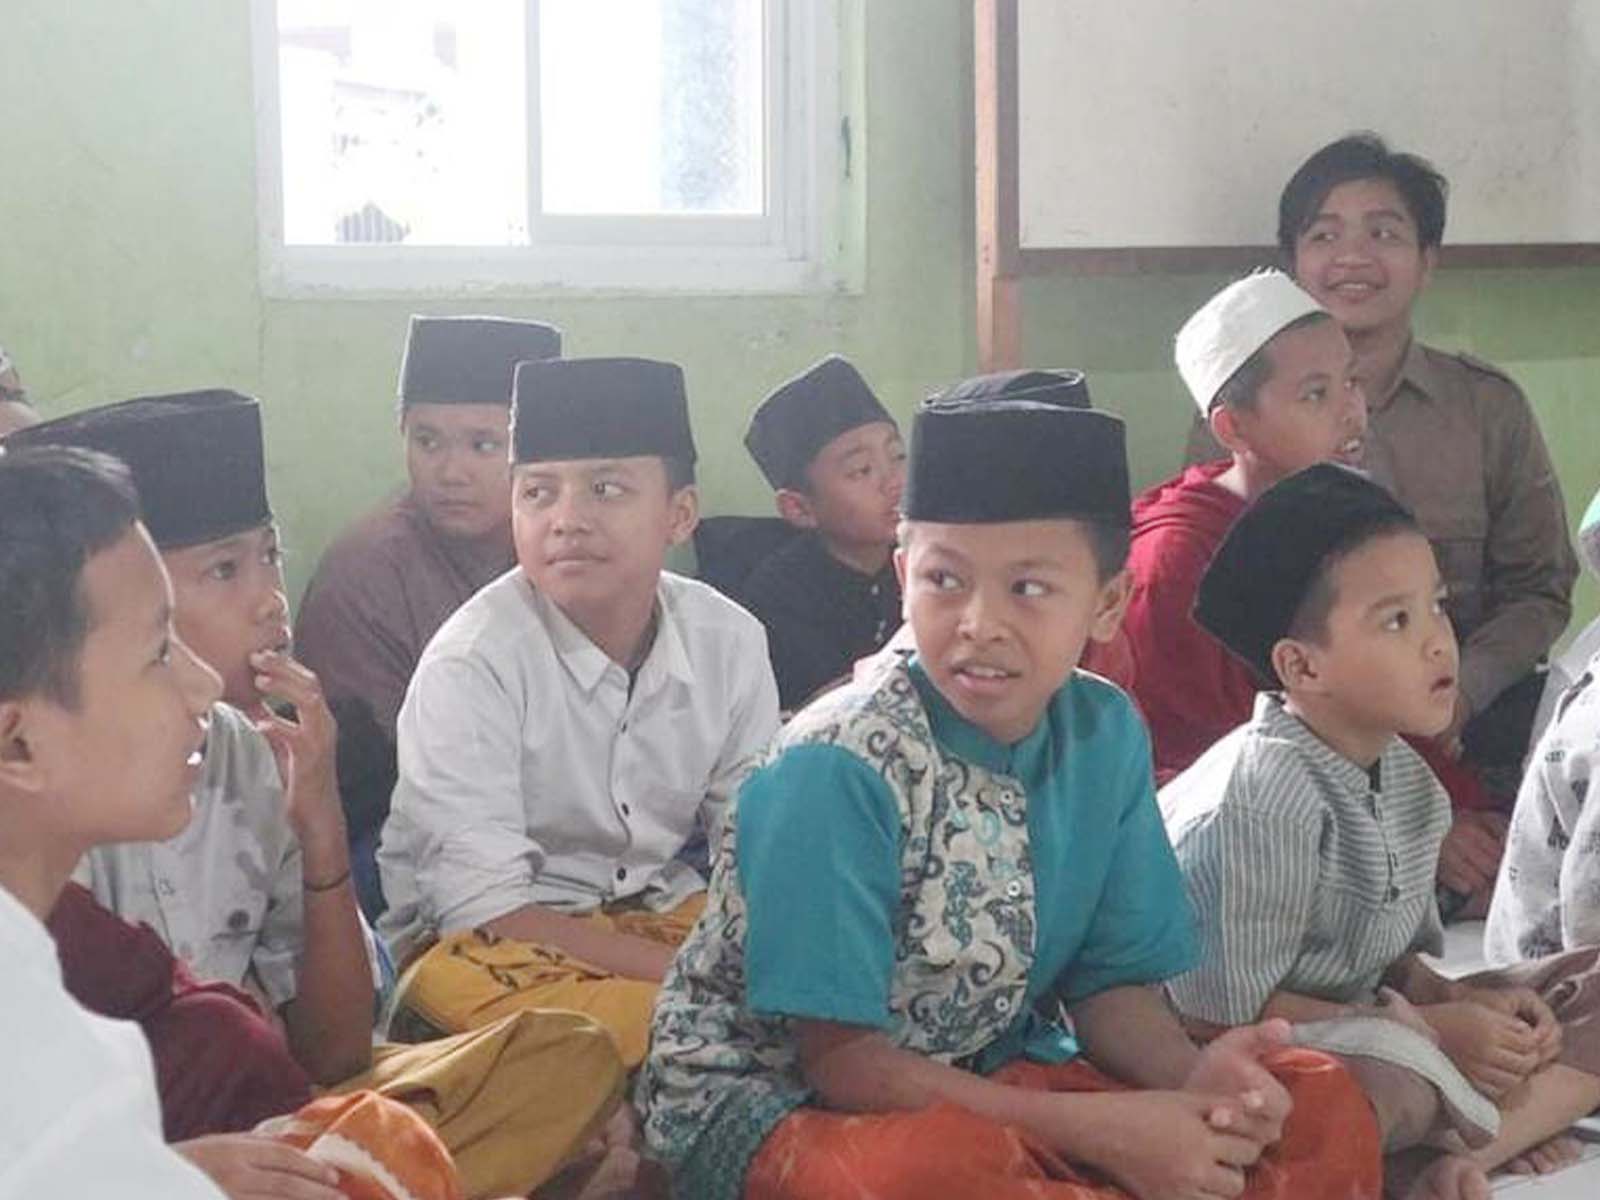 Impust Goes To Panti Asuhan Ar-Rohmat: Berbagi Kebahagiaan di Bulan Ramadan bagi anak-anak